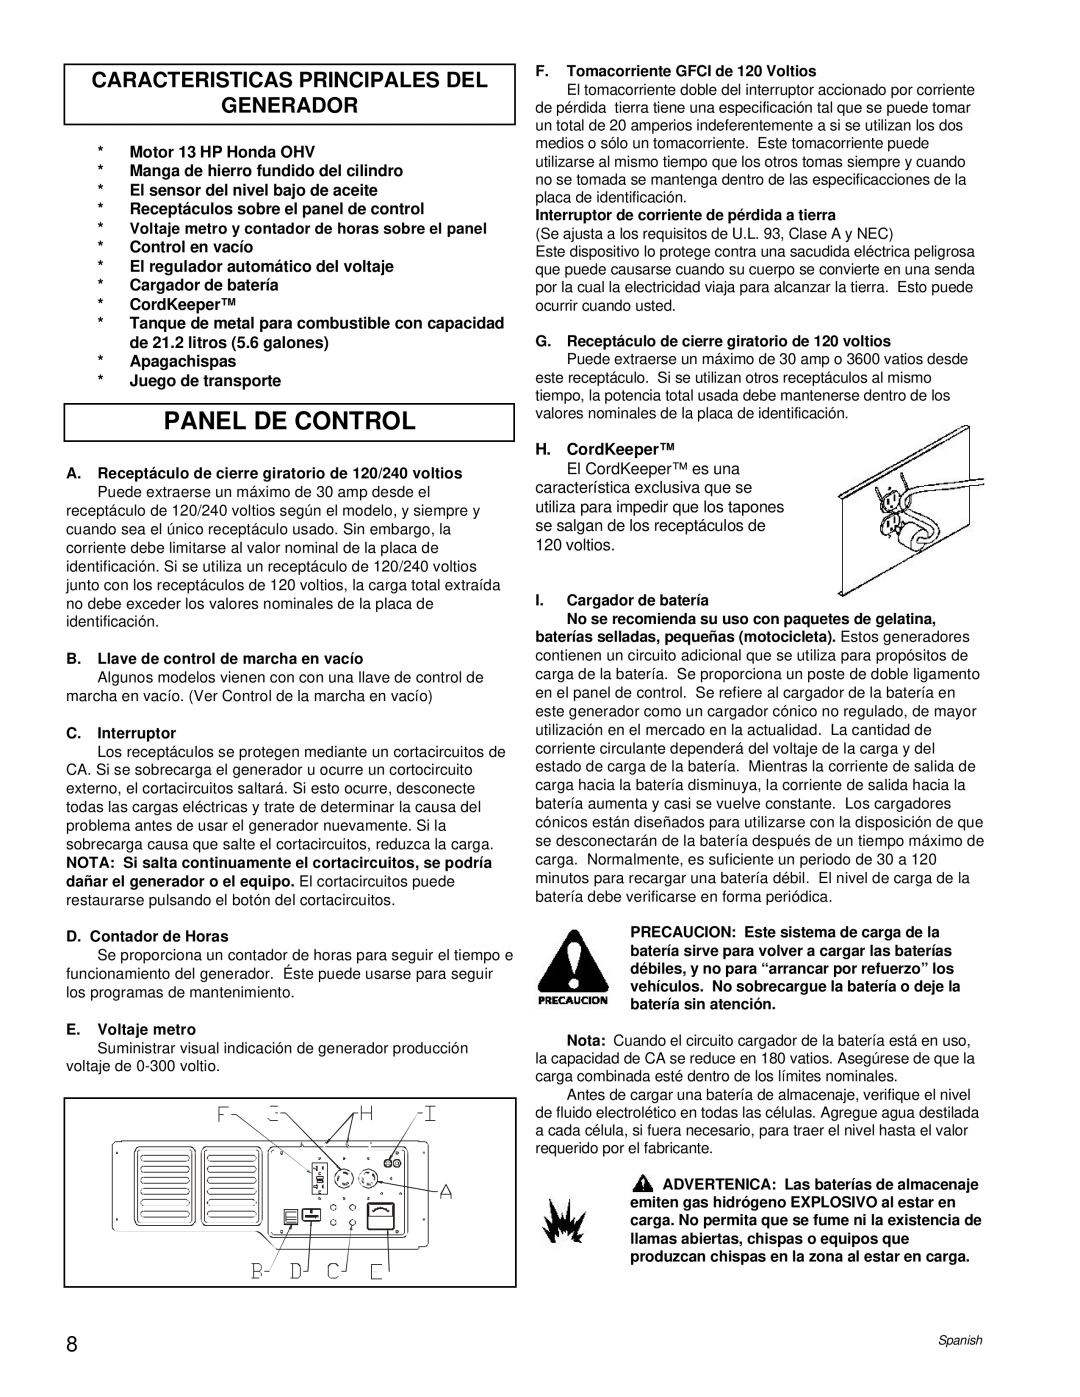 Powermate PM0496504.17 manual Panel De Control, Caracteristicas Principales Del Generador 